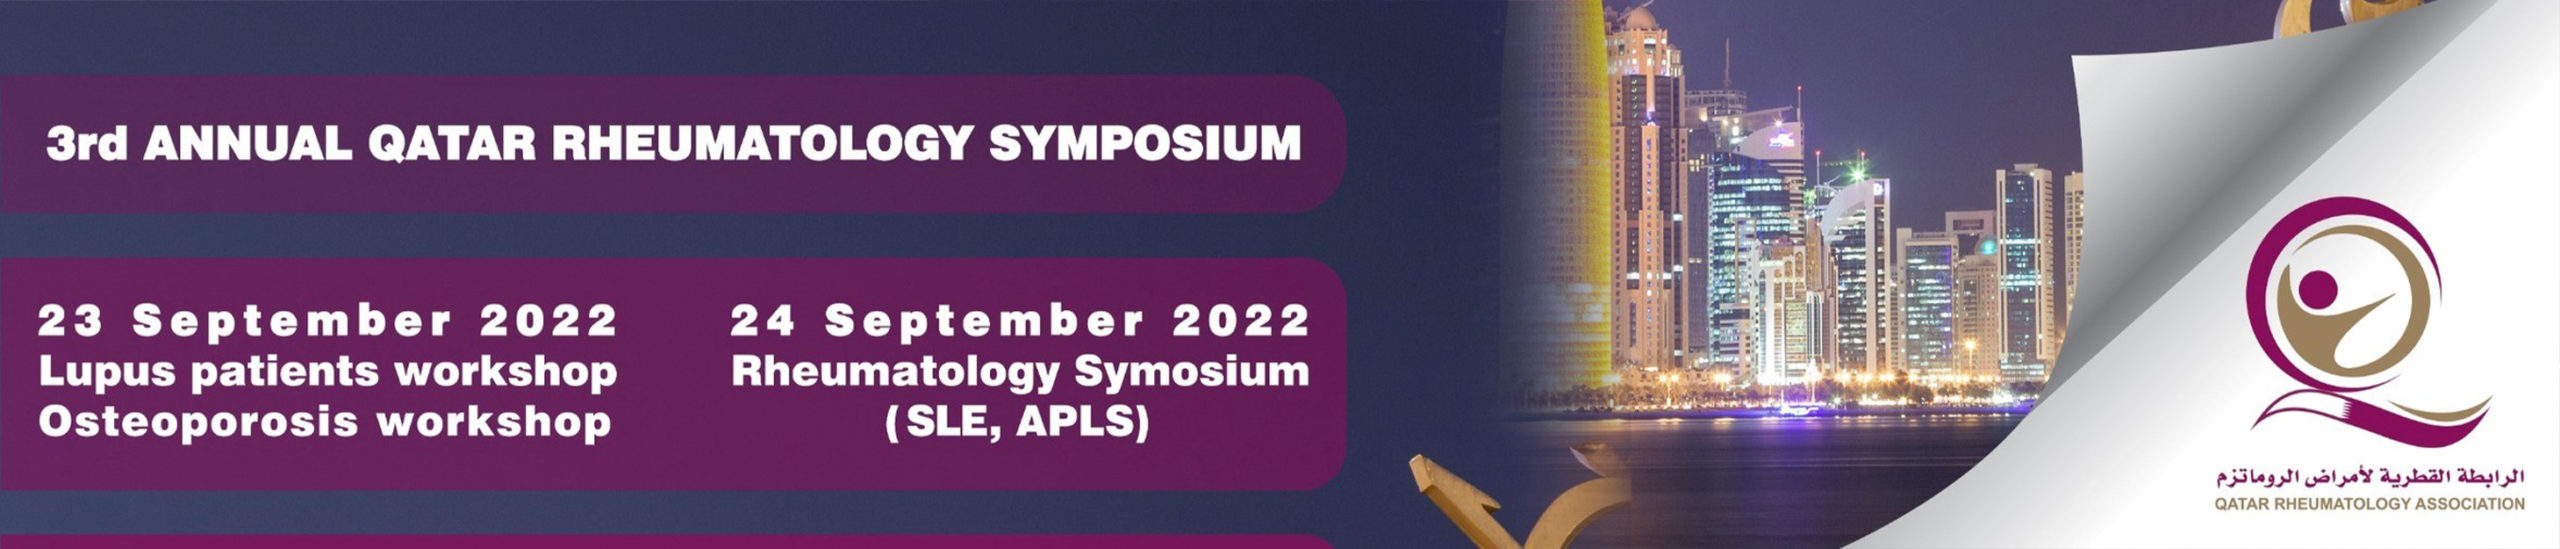 3rd Annual Qatar Rheumatology Symposium